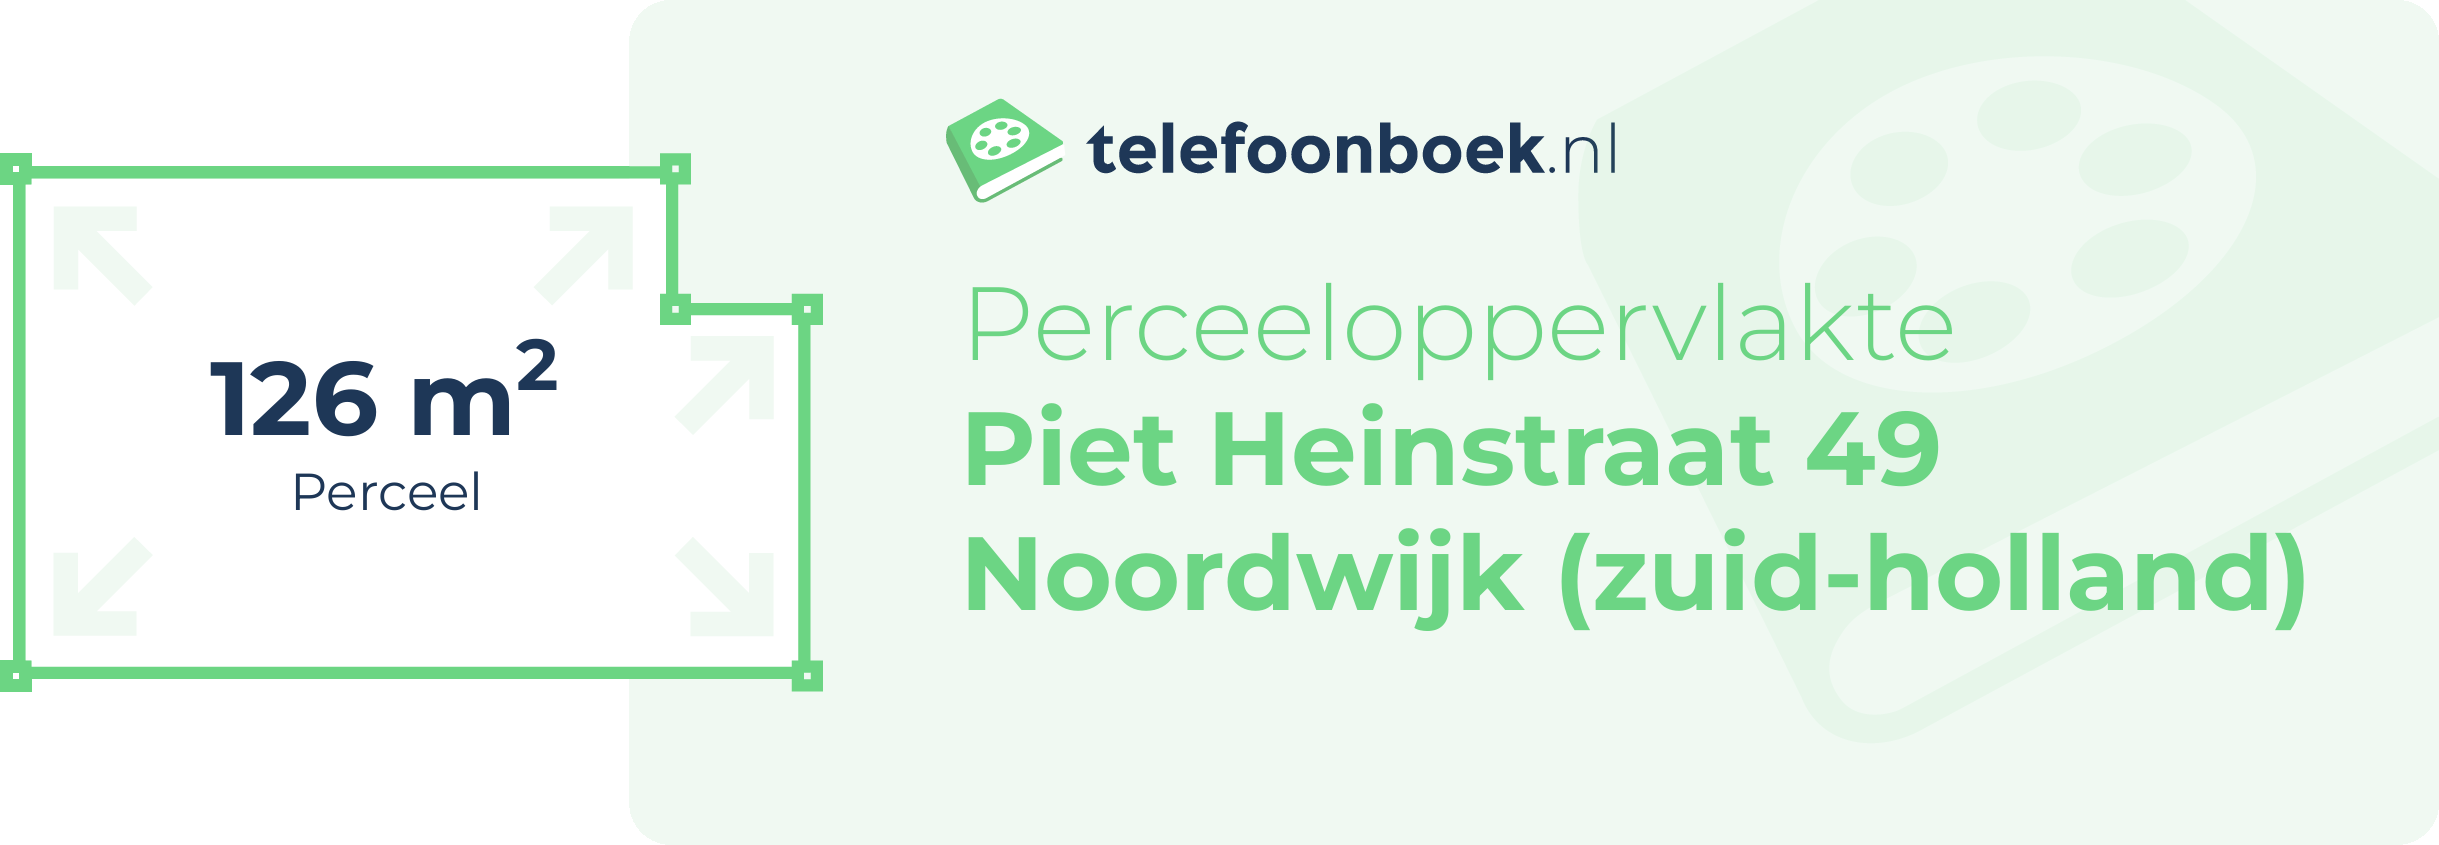 Perceeloppervlakte Piet Heinstraat 49 Noordwijk (Zuid-Holland)